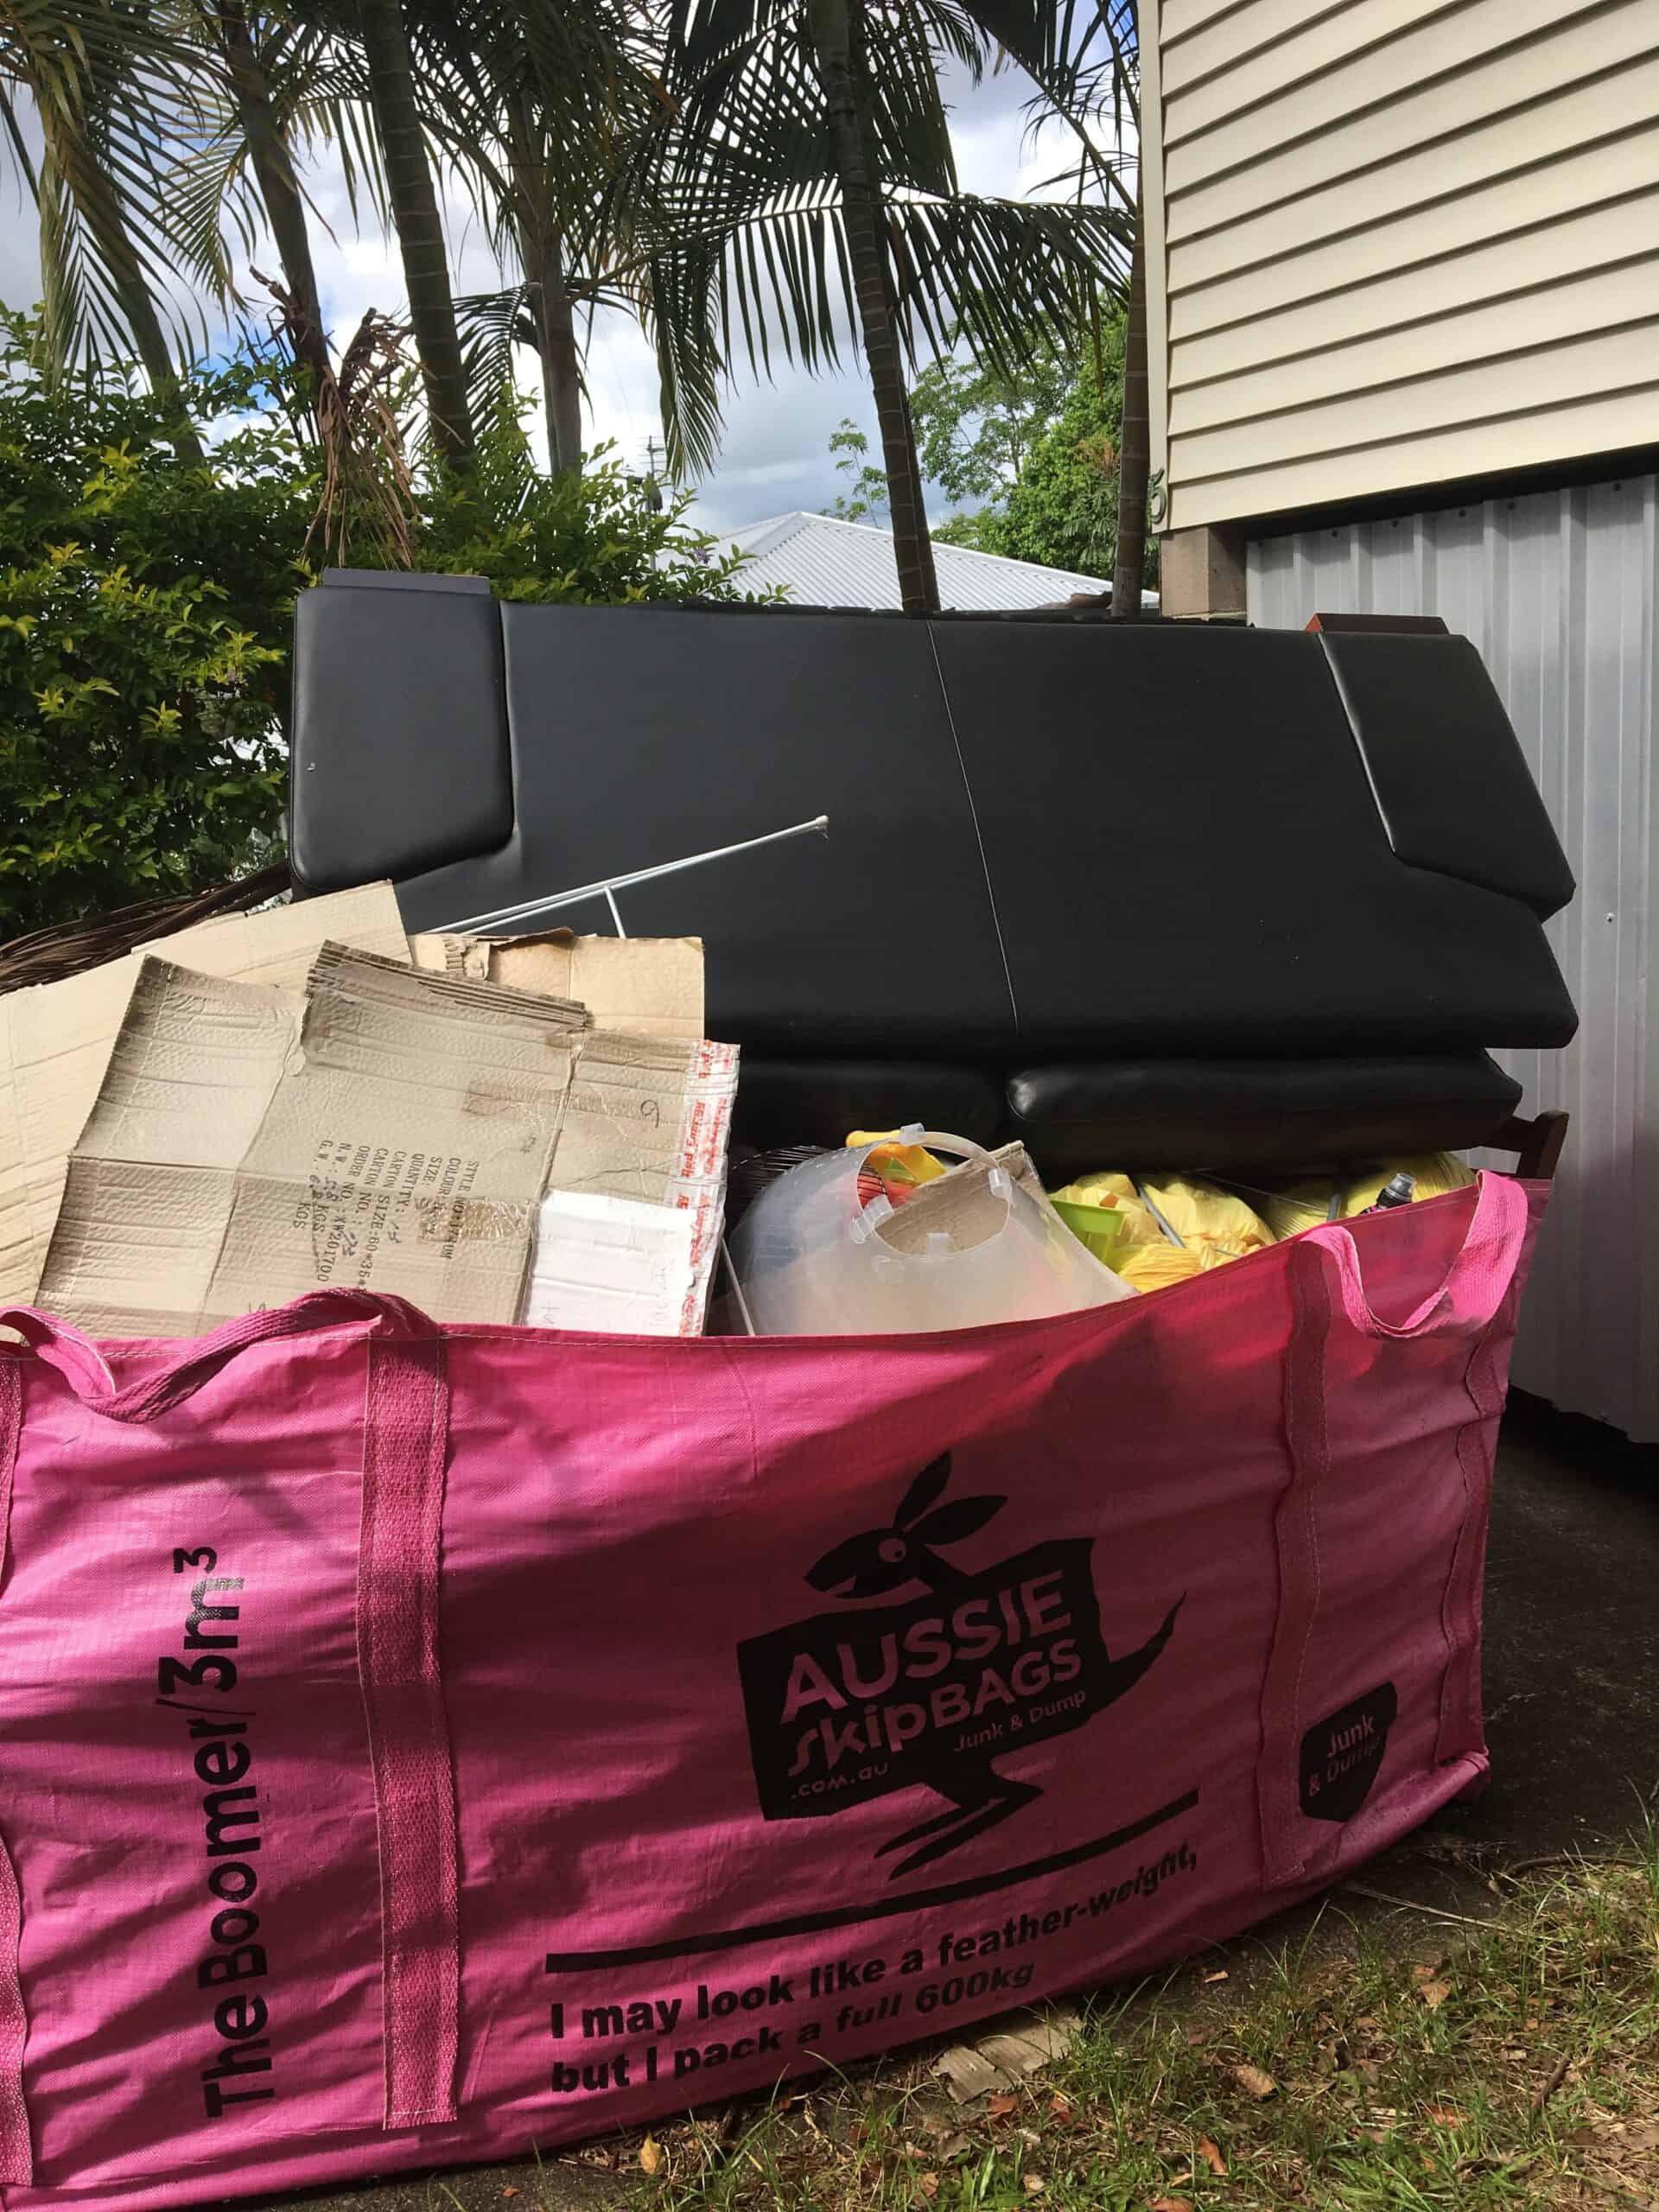 Rubbish removal service Sunshine Coast